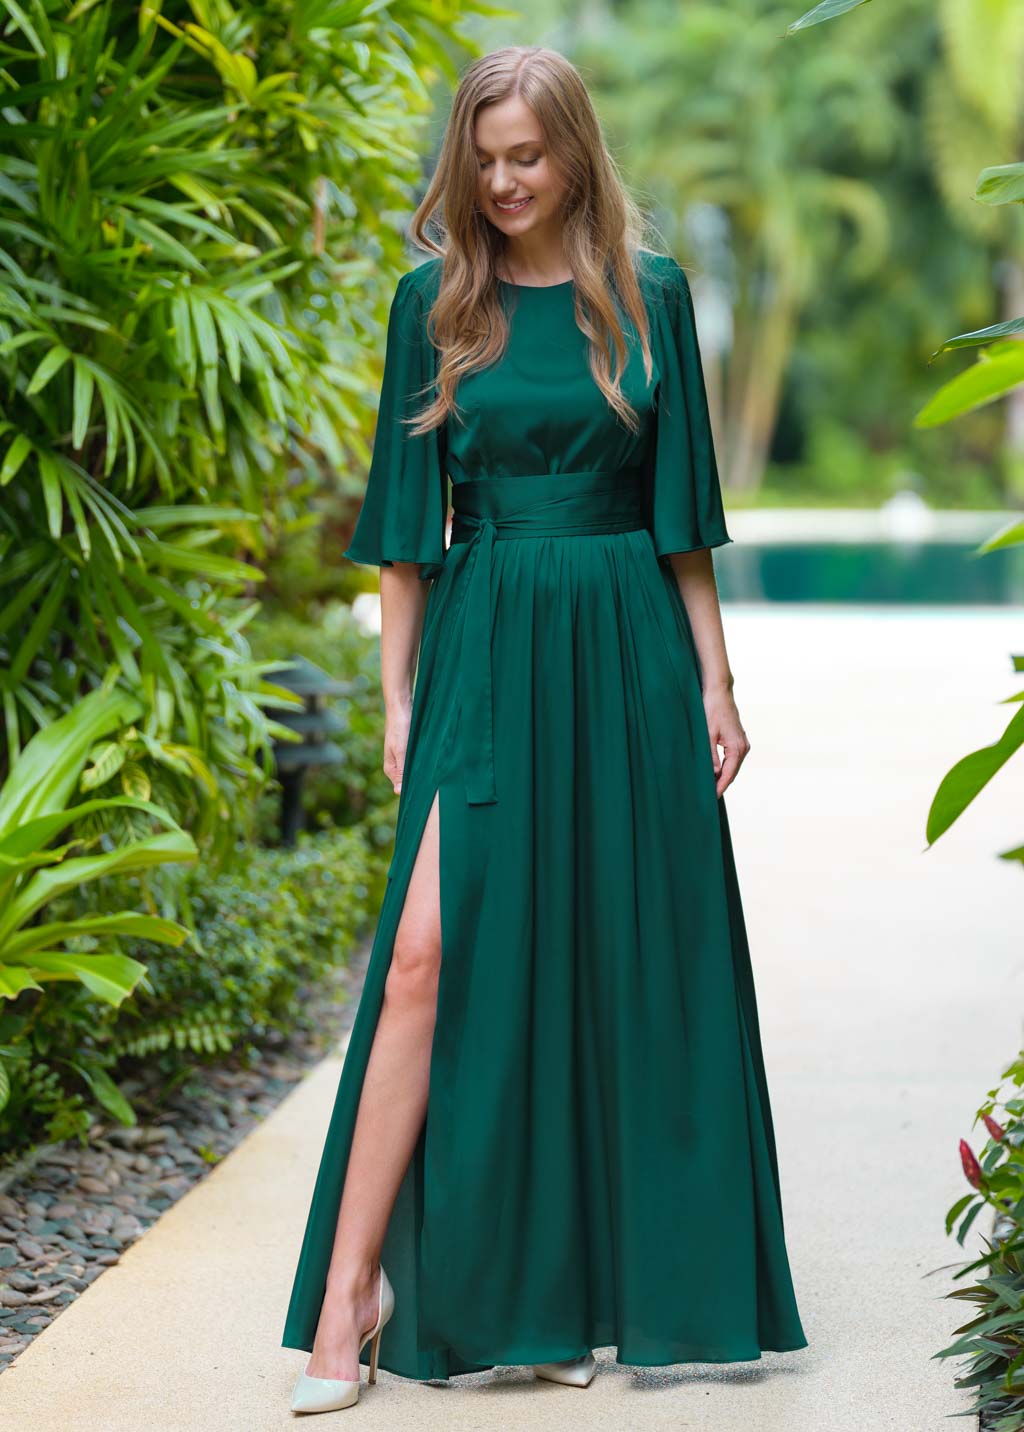 Dark green silk dress with belt